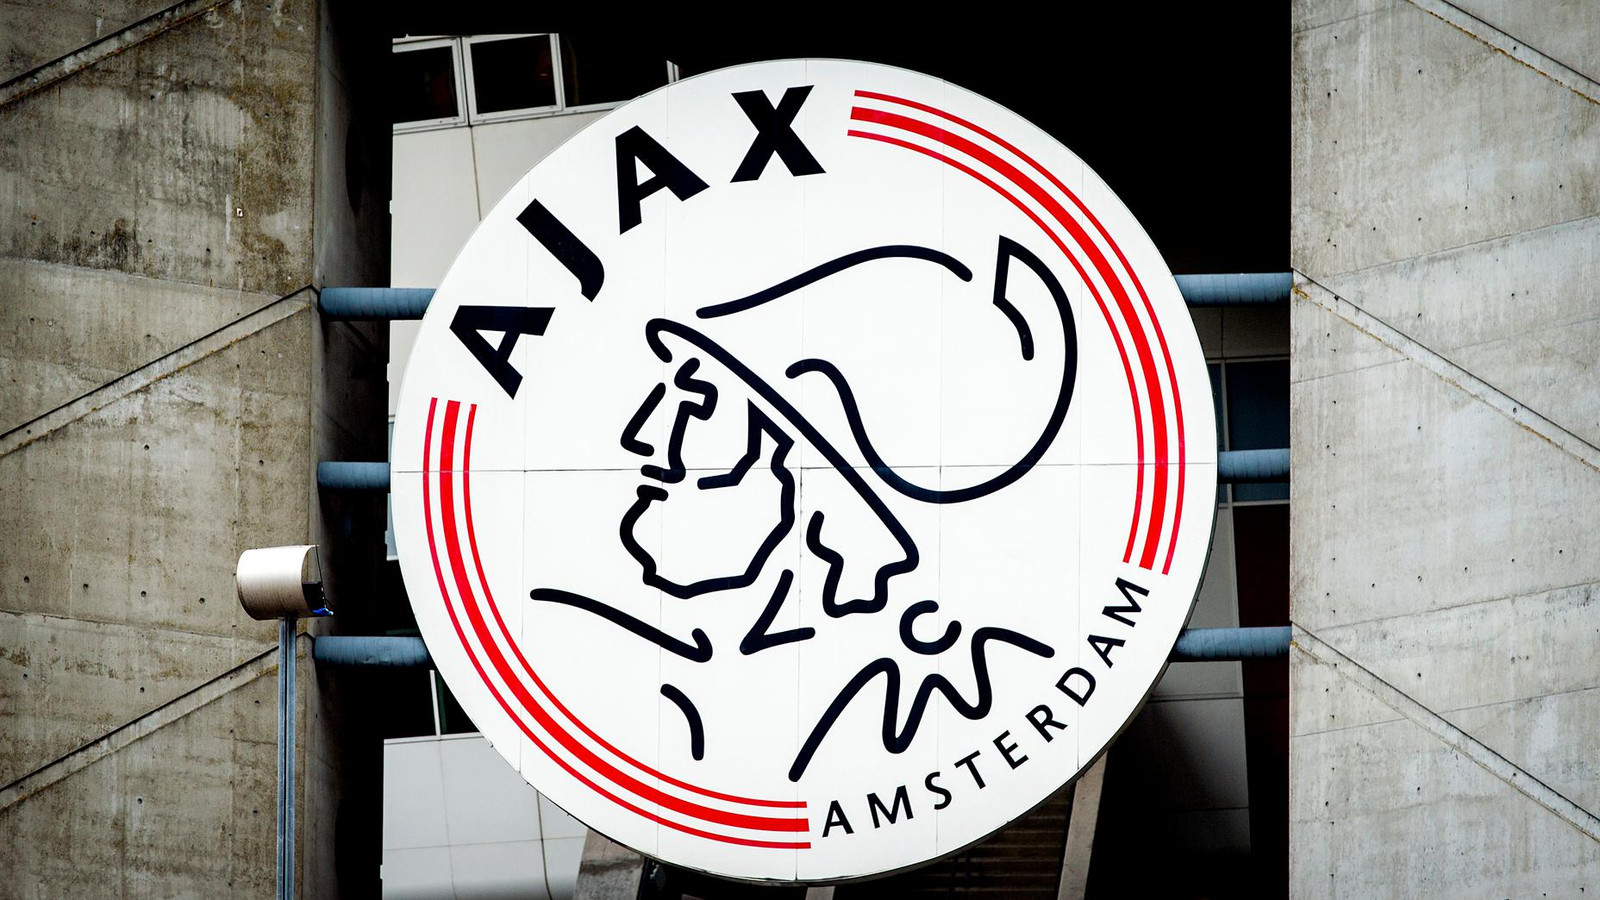 Ajax.